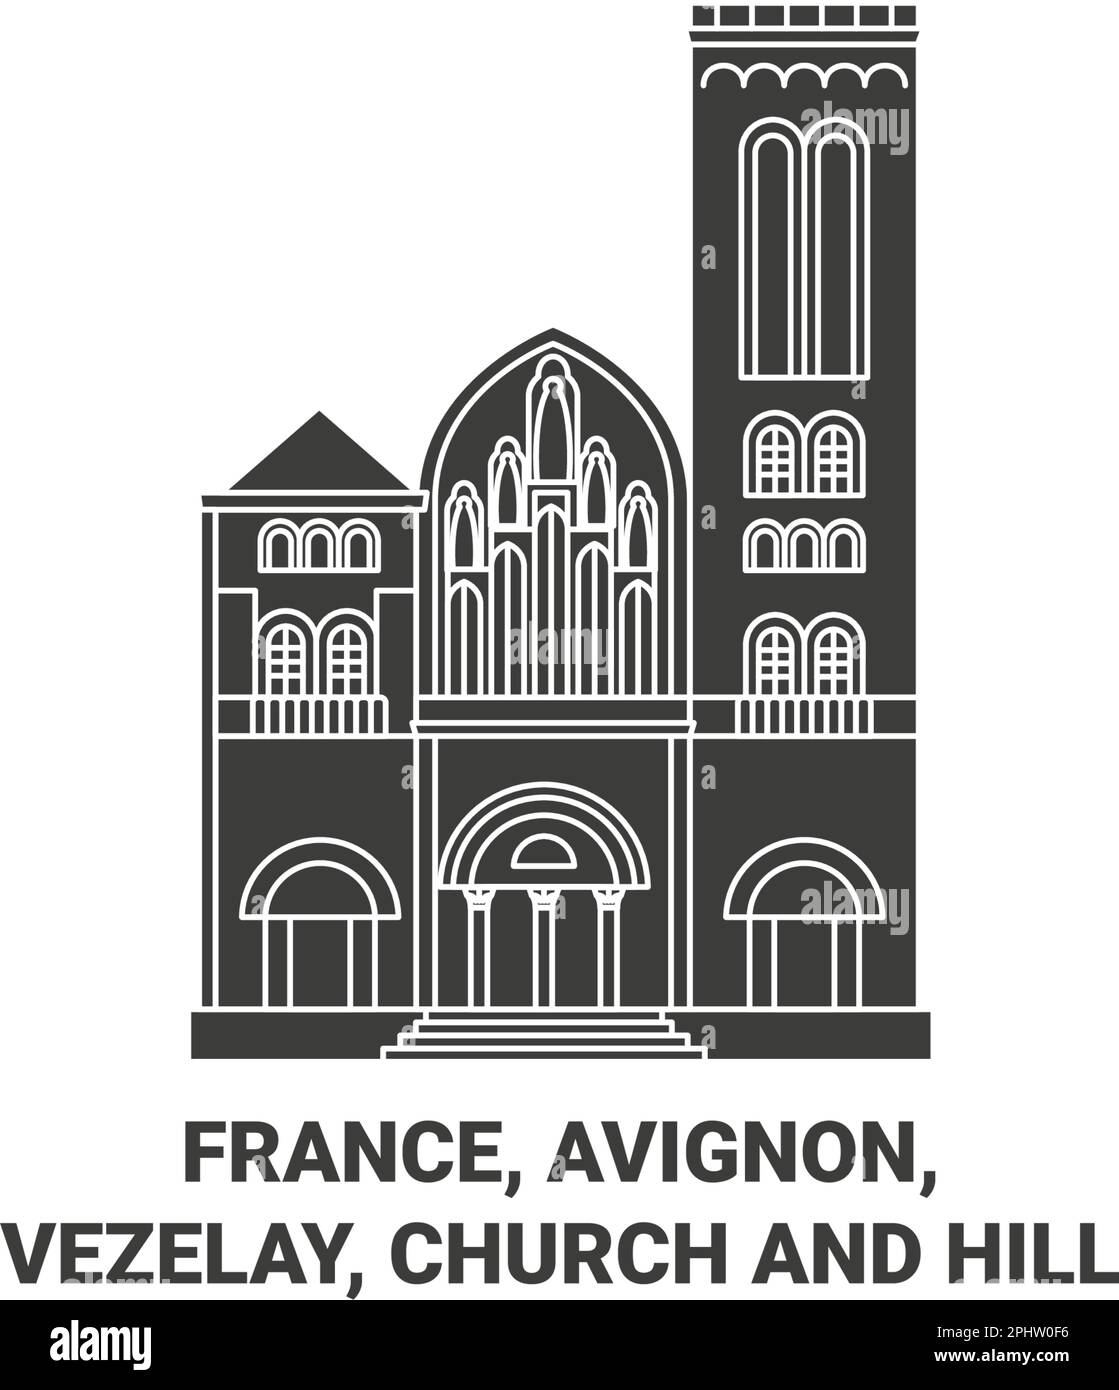 France, Avignon, Vezelay, Eglise et Hill Voyage illustration vectorielle Illustration de Vecteur